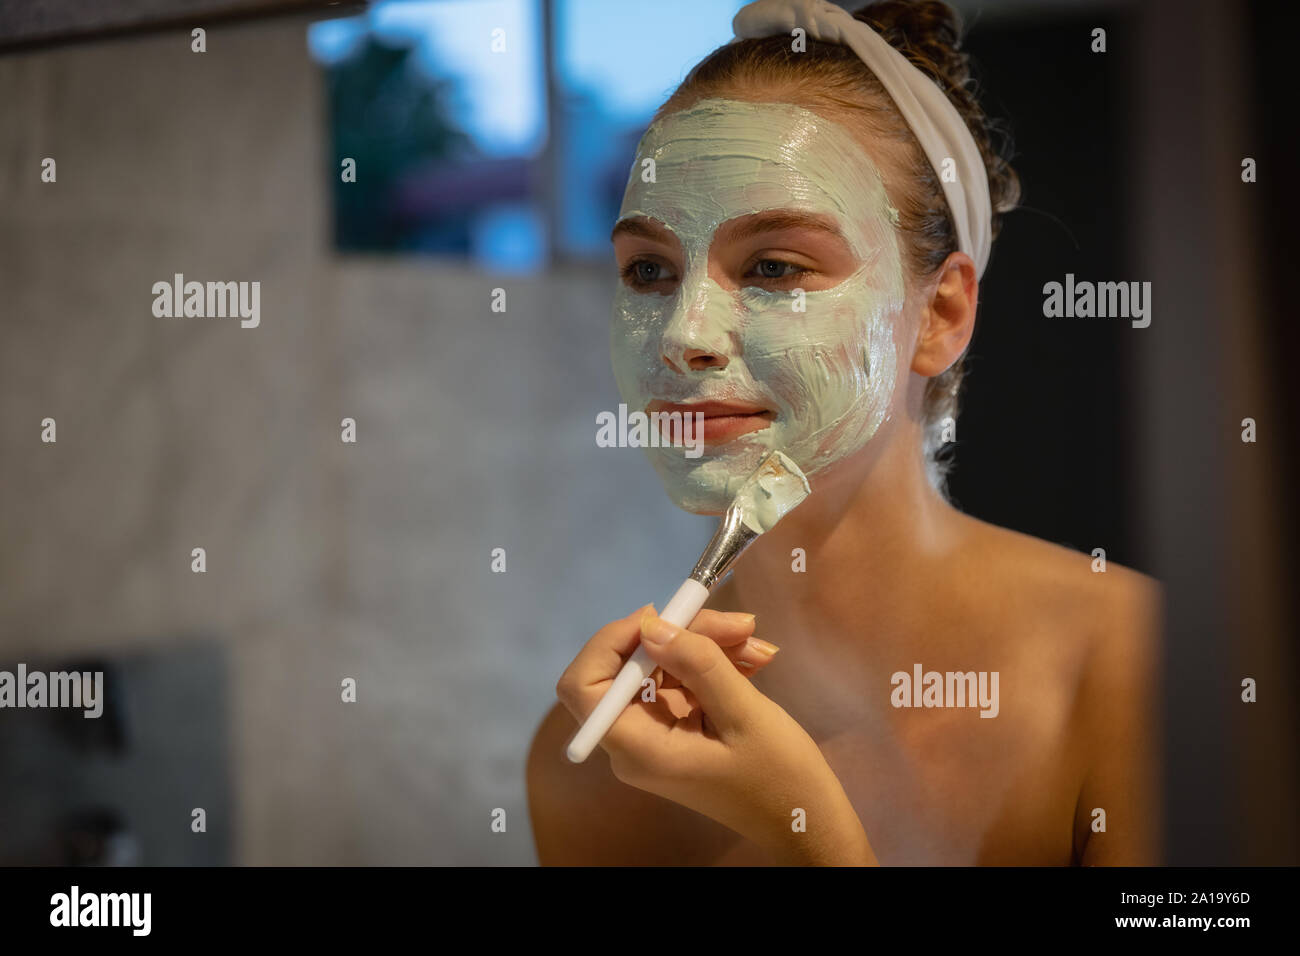 Jeune femme l'application d'un masque de visage dans une salle de bains moderne Banque D'Images